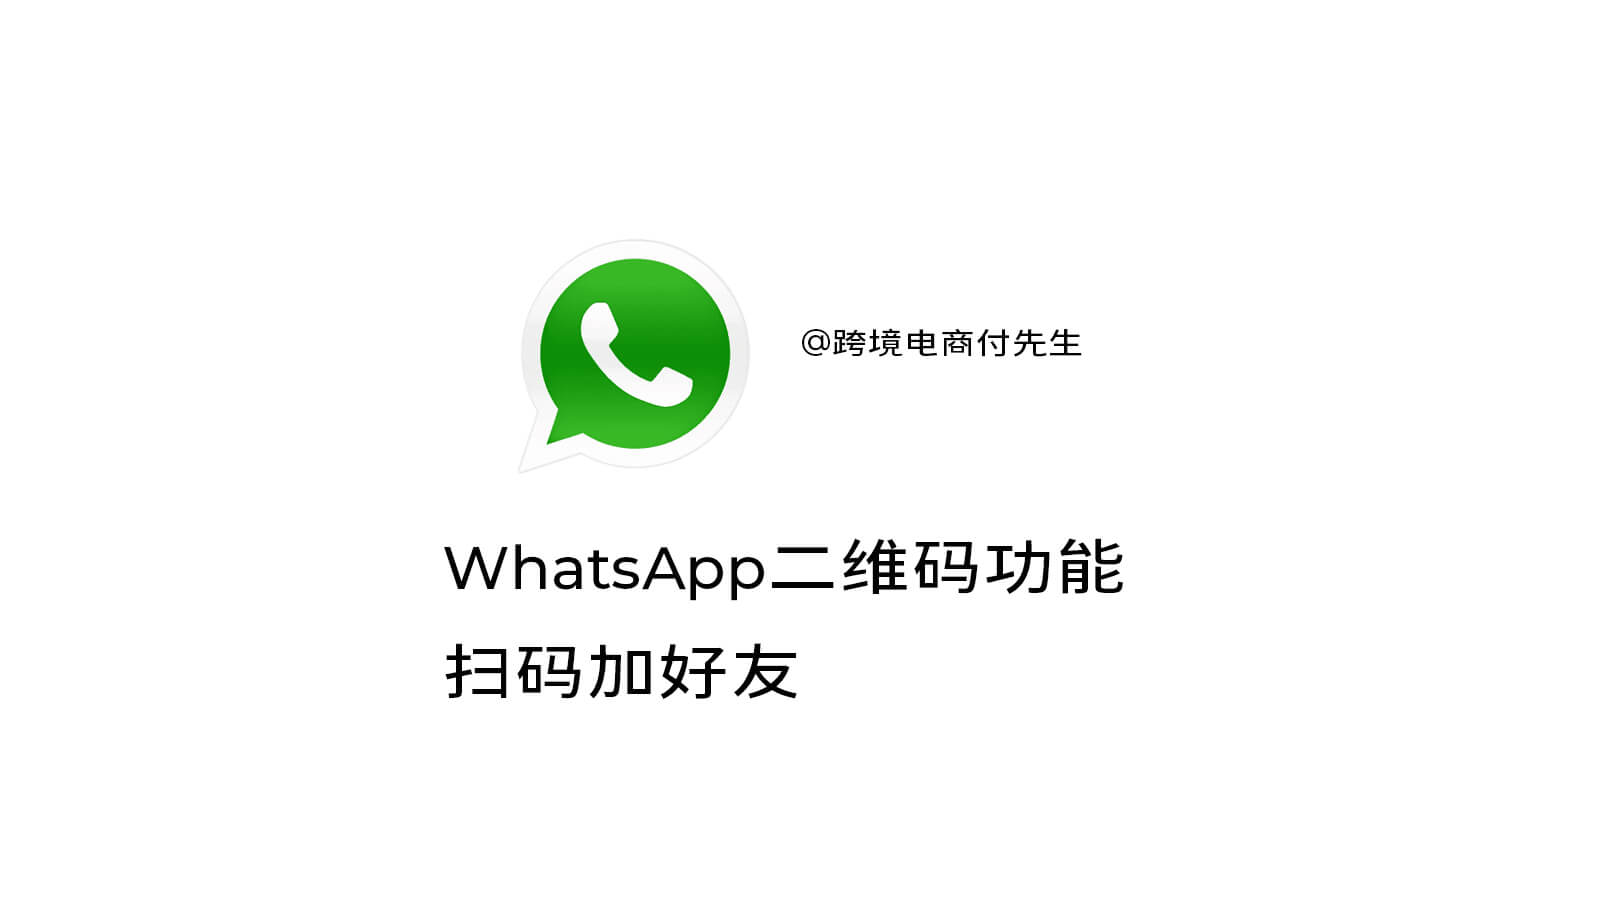 WhatsApp二维码功能也可以直接扫描